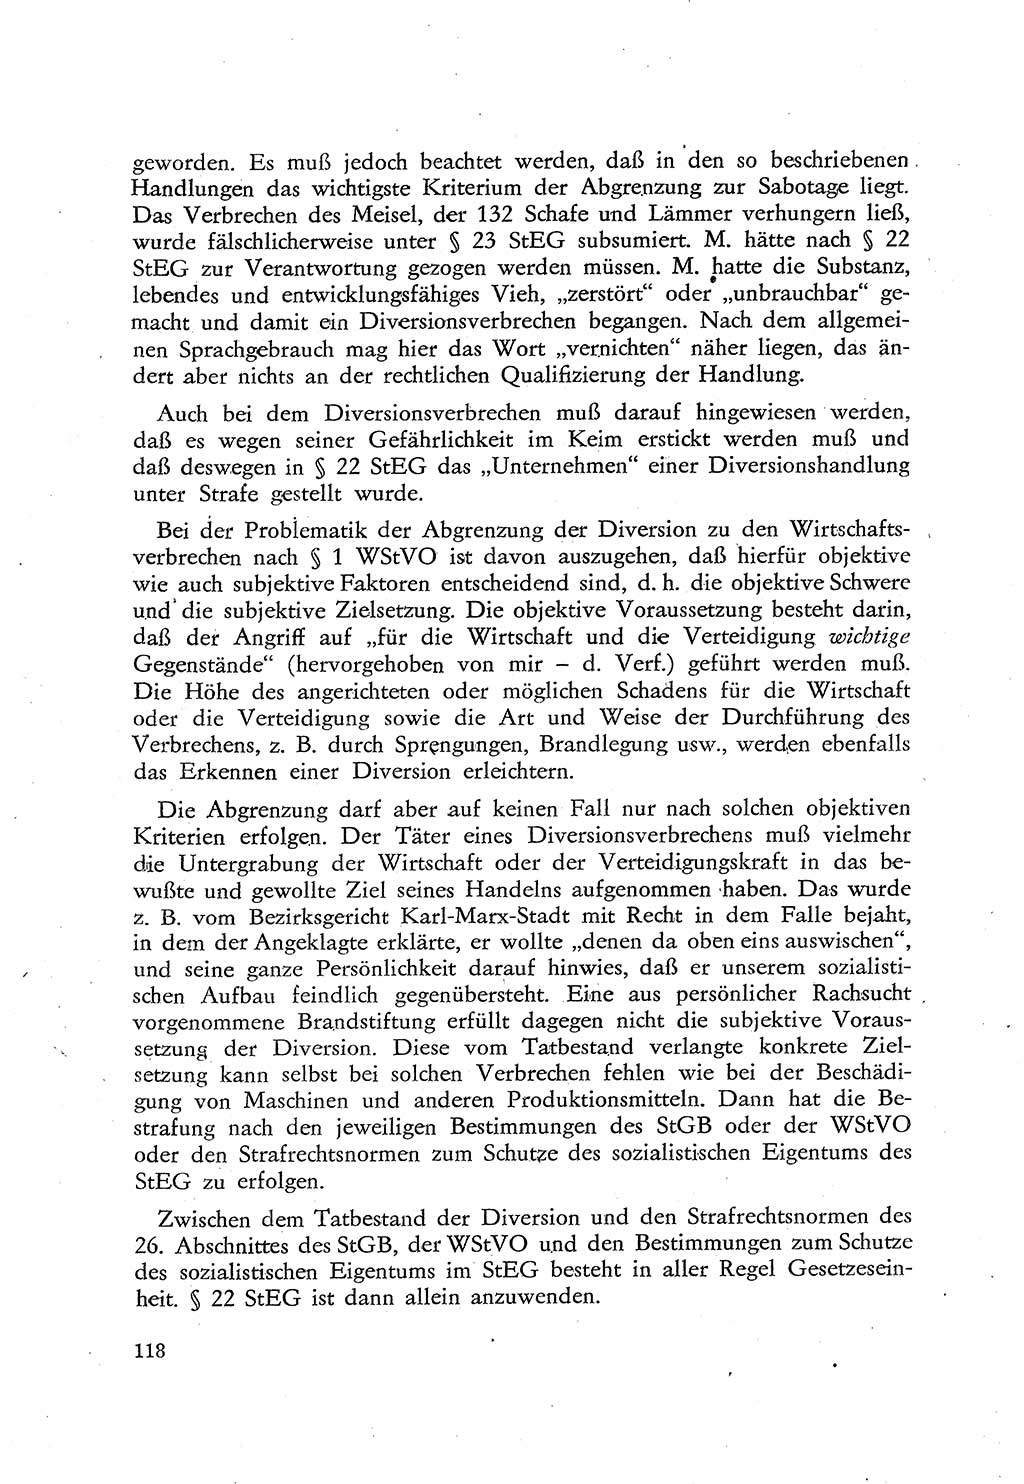 Beiträge zum Strafrecht [Deutsche Demokratische Republik (DDR)], Staatsverbrechen 1959, Seite 118 (Beitr. Strafr. DDR St.-Verbr. 1959, S. 118)